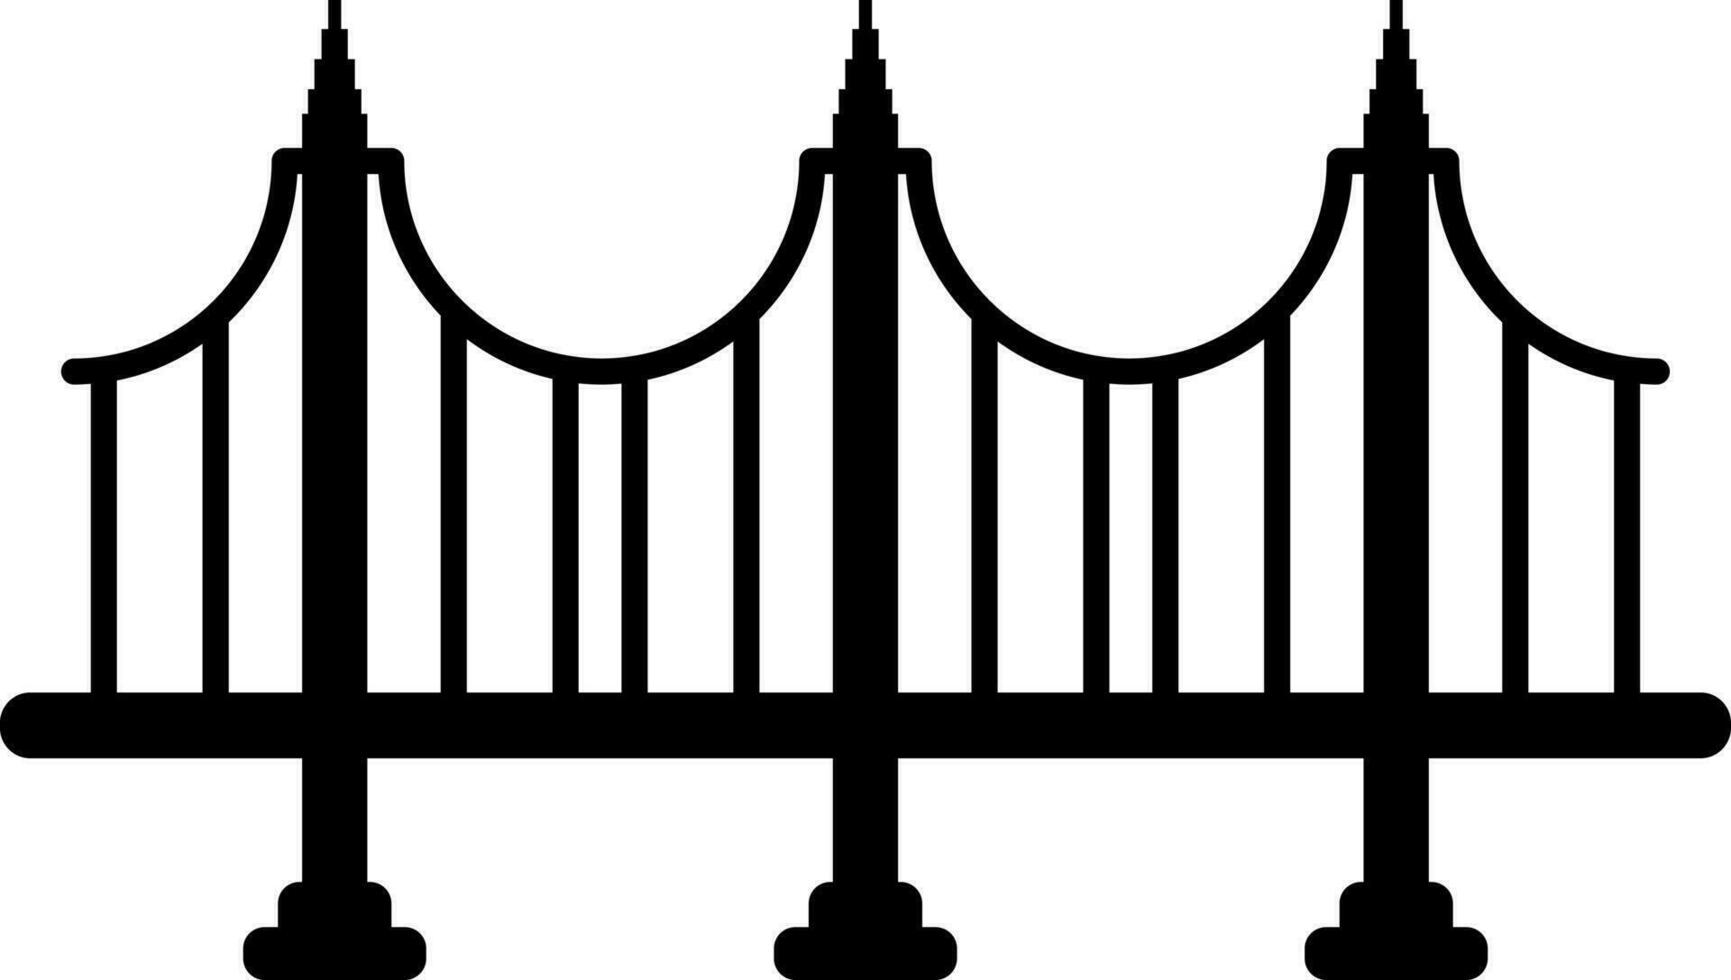 Bridge icon or symbol in Black and White color. vector